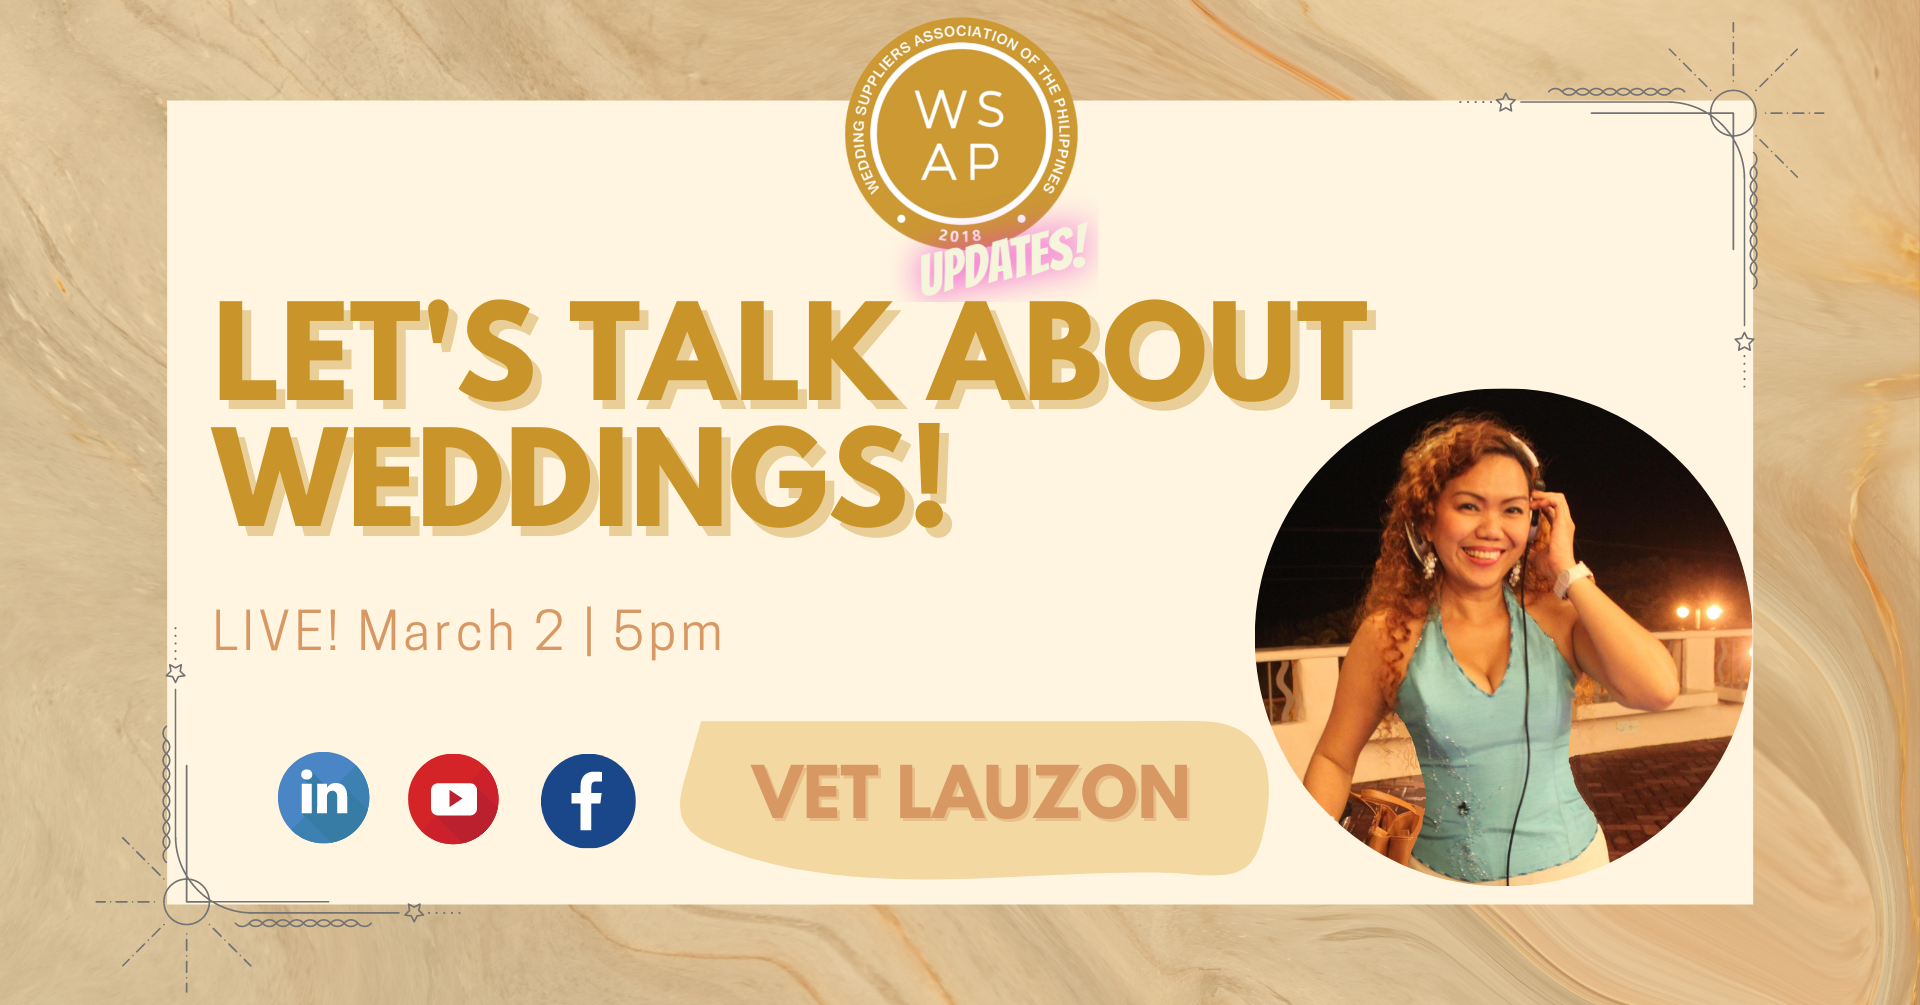 Let's Talk About Weddings with Vet Lauzon